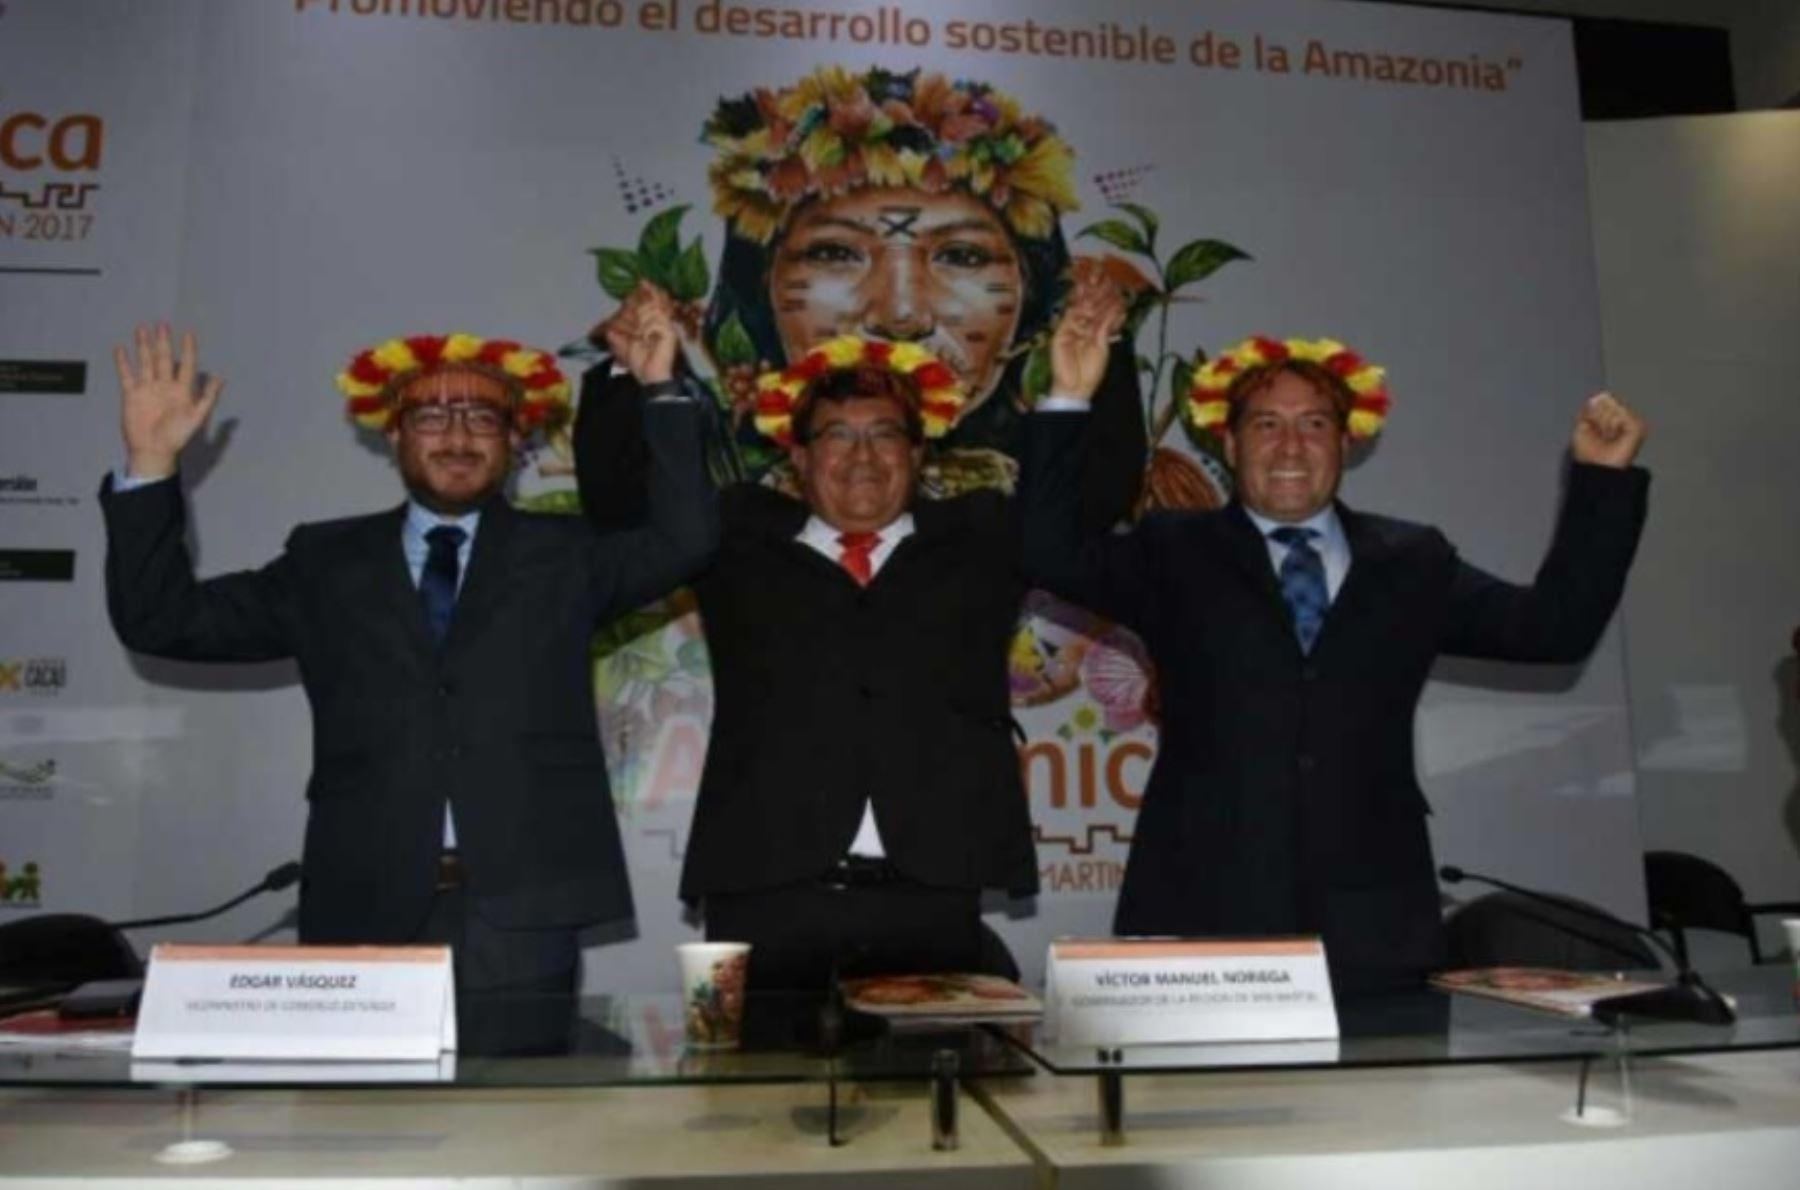 Un movimiento económico superior a los 71 millones de soles generó la Expo Amazónica 2017, realizada en agosto y de manera simultánea en las ciudades de Moyobamba y Tarapoto, informó el gobernador regional de San Martín, Víctor Noriega Reátegui.